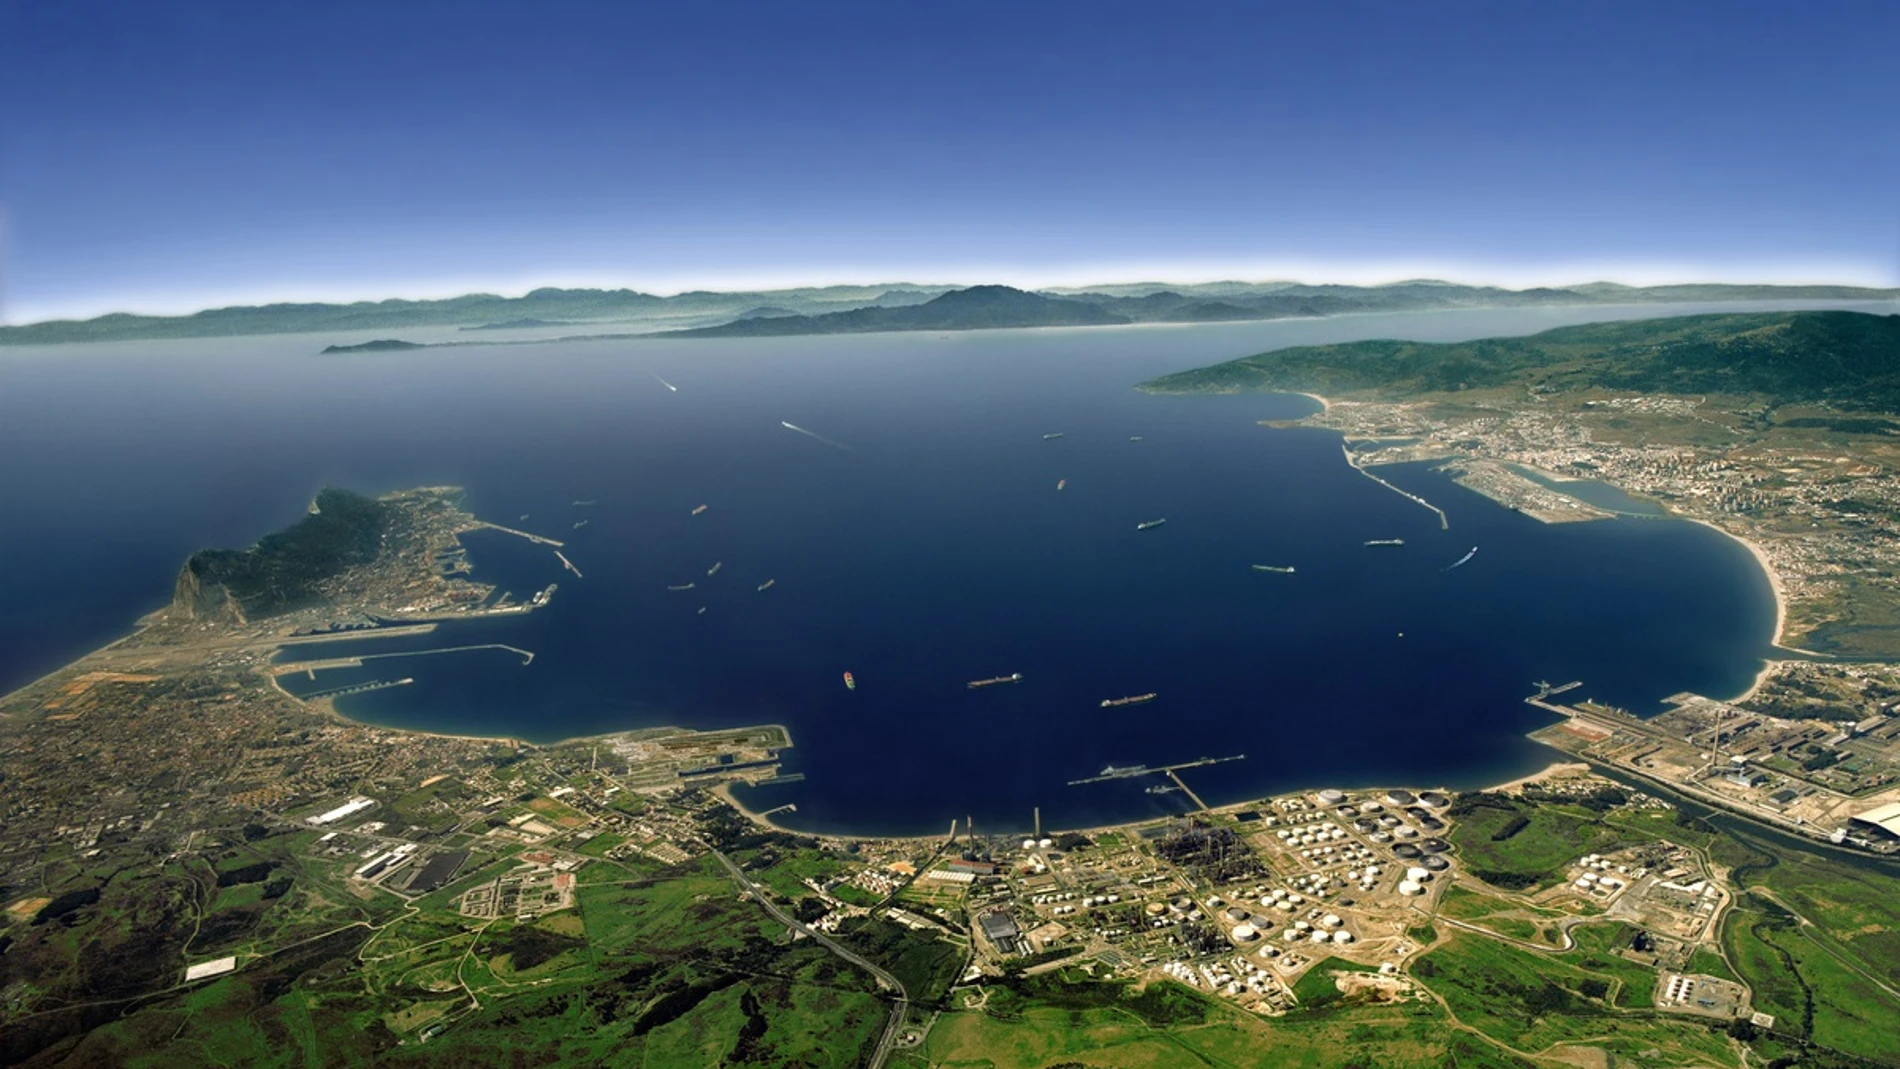 Imagen panorámica de la bahía de Algeciras